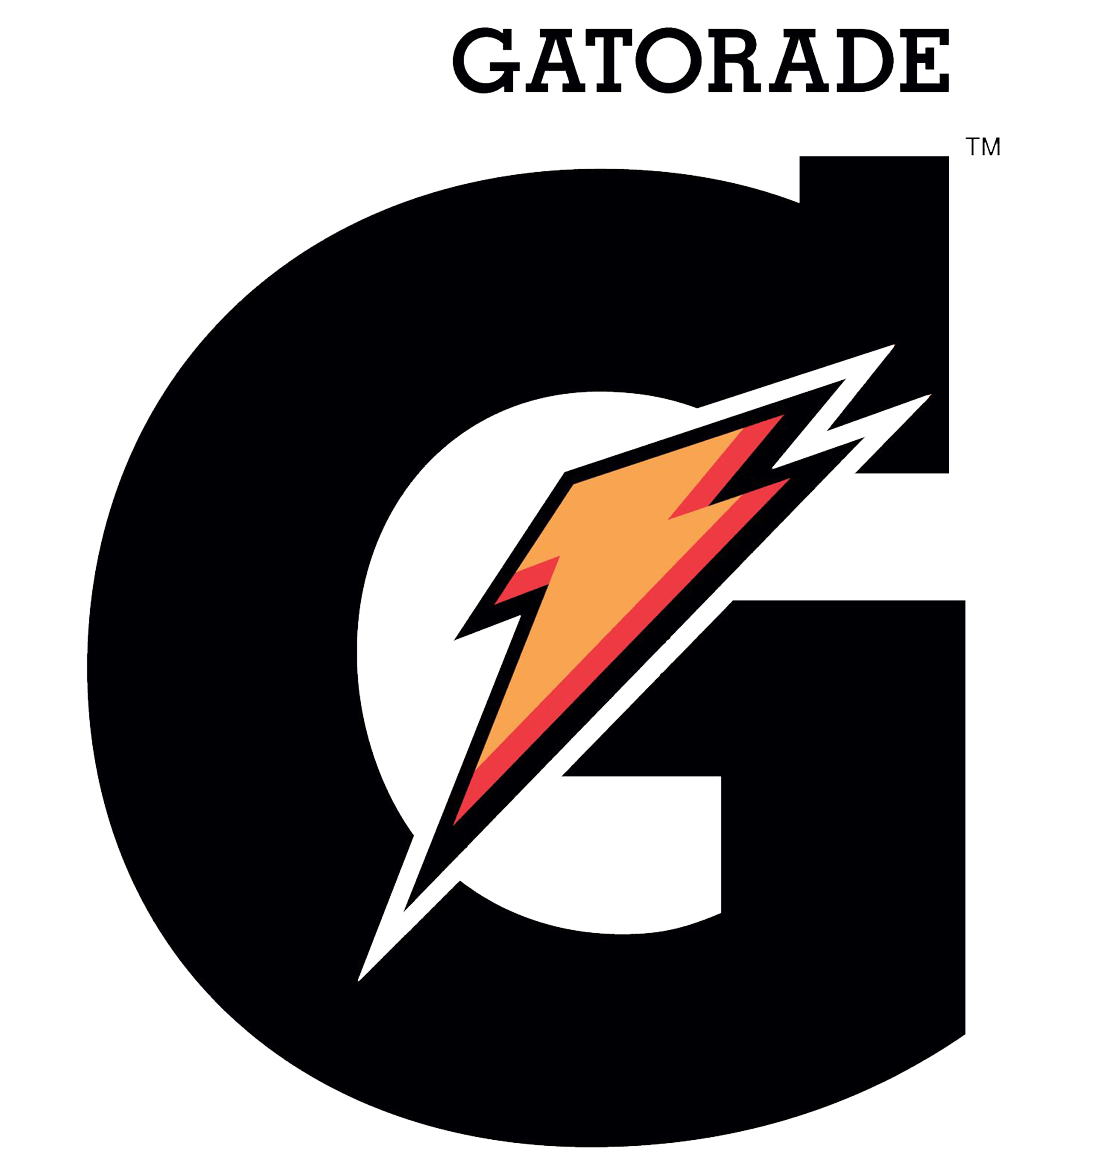 gatorade sponsor logo